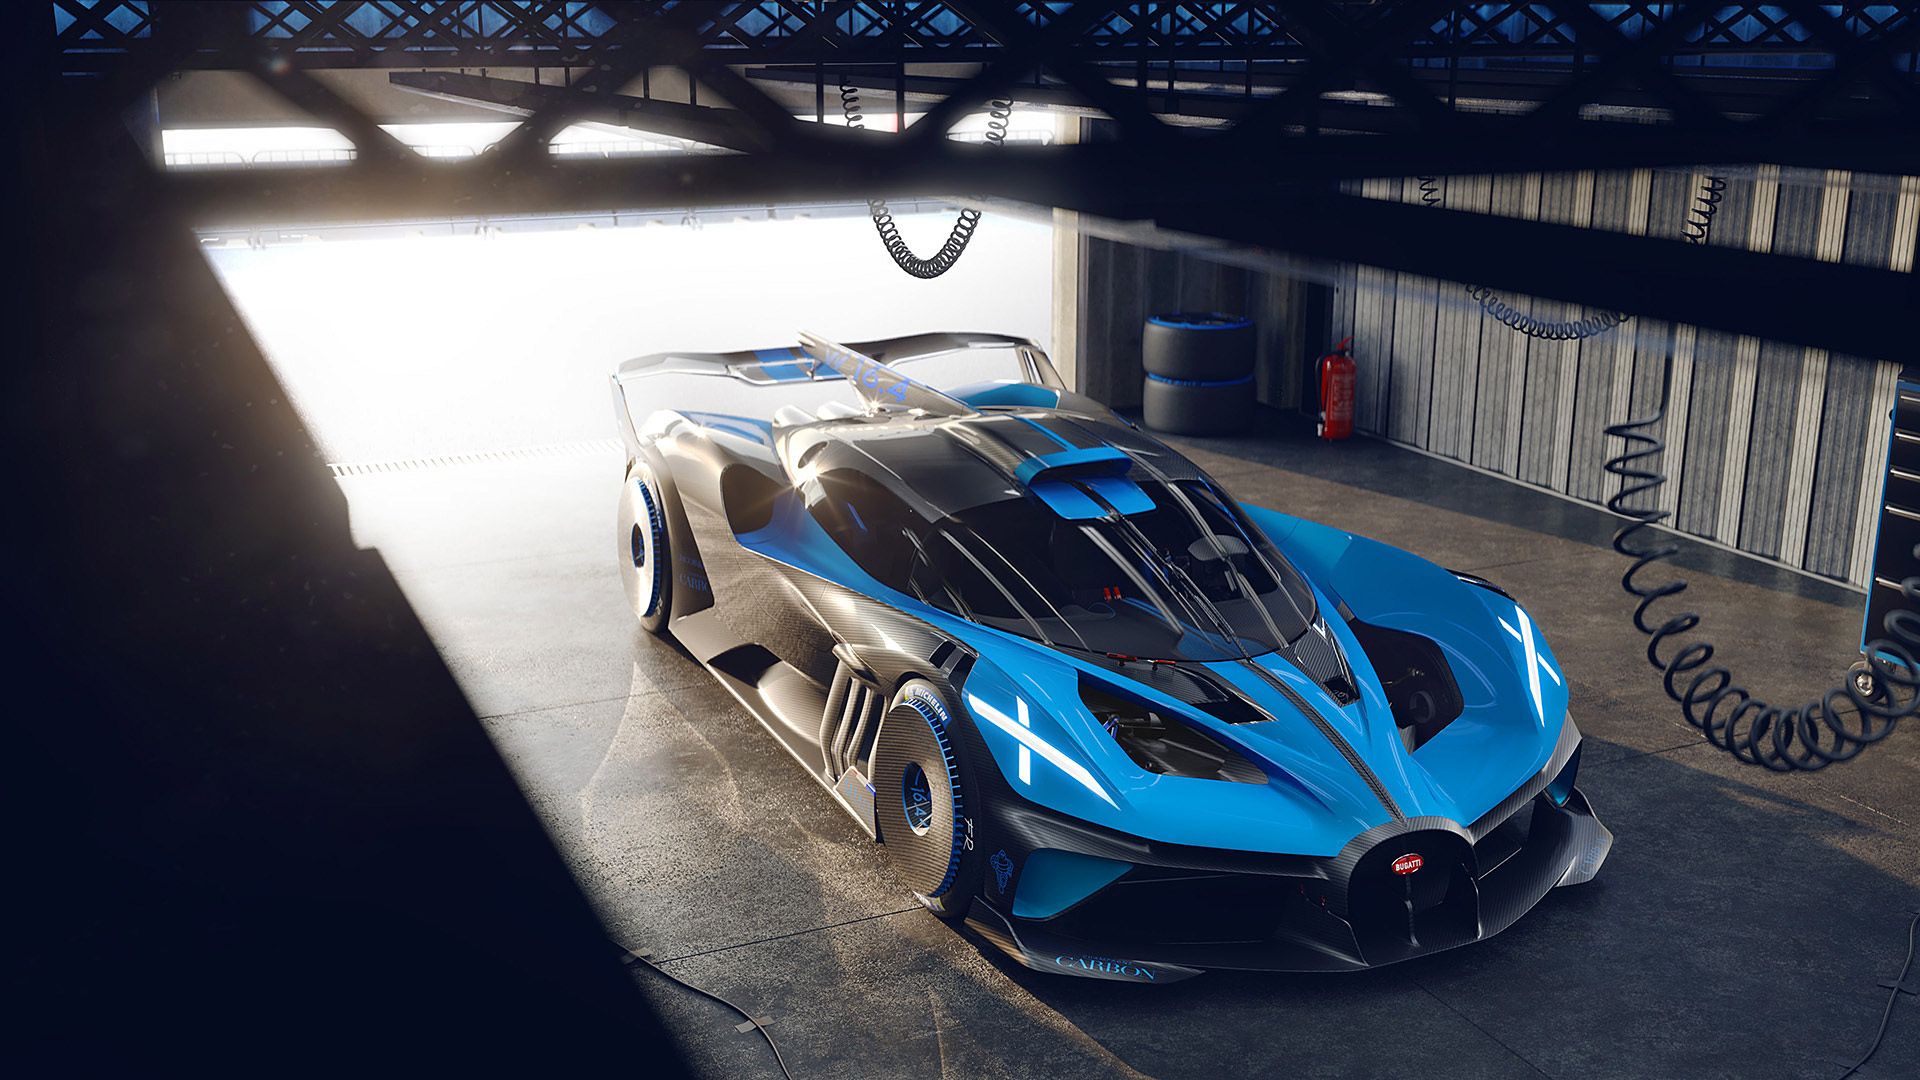 A Revolutionary Vision: The 2020 Bugatti Bolide Concept